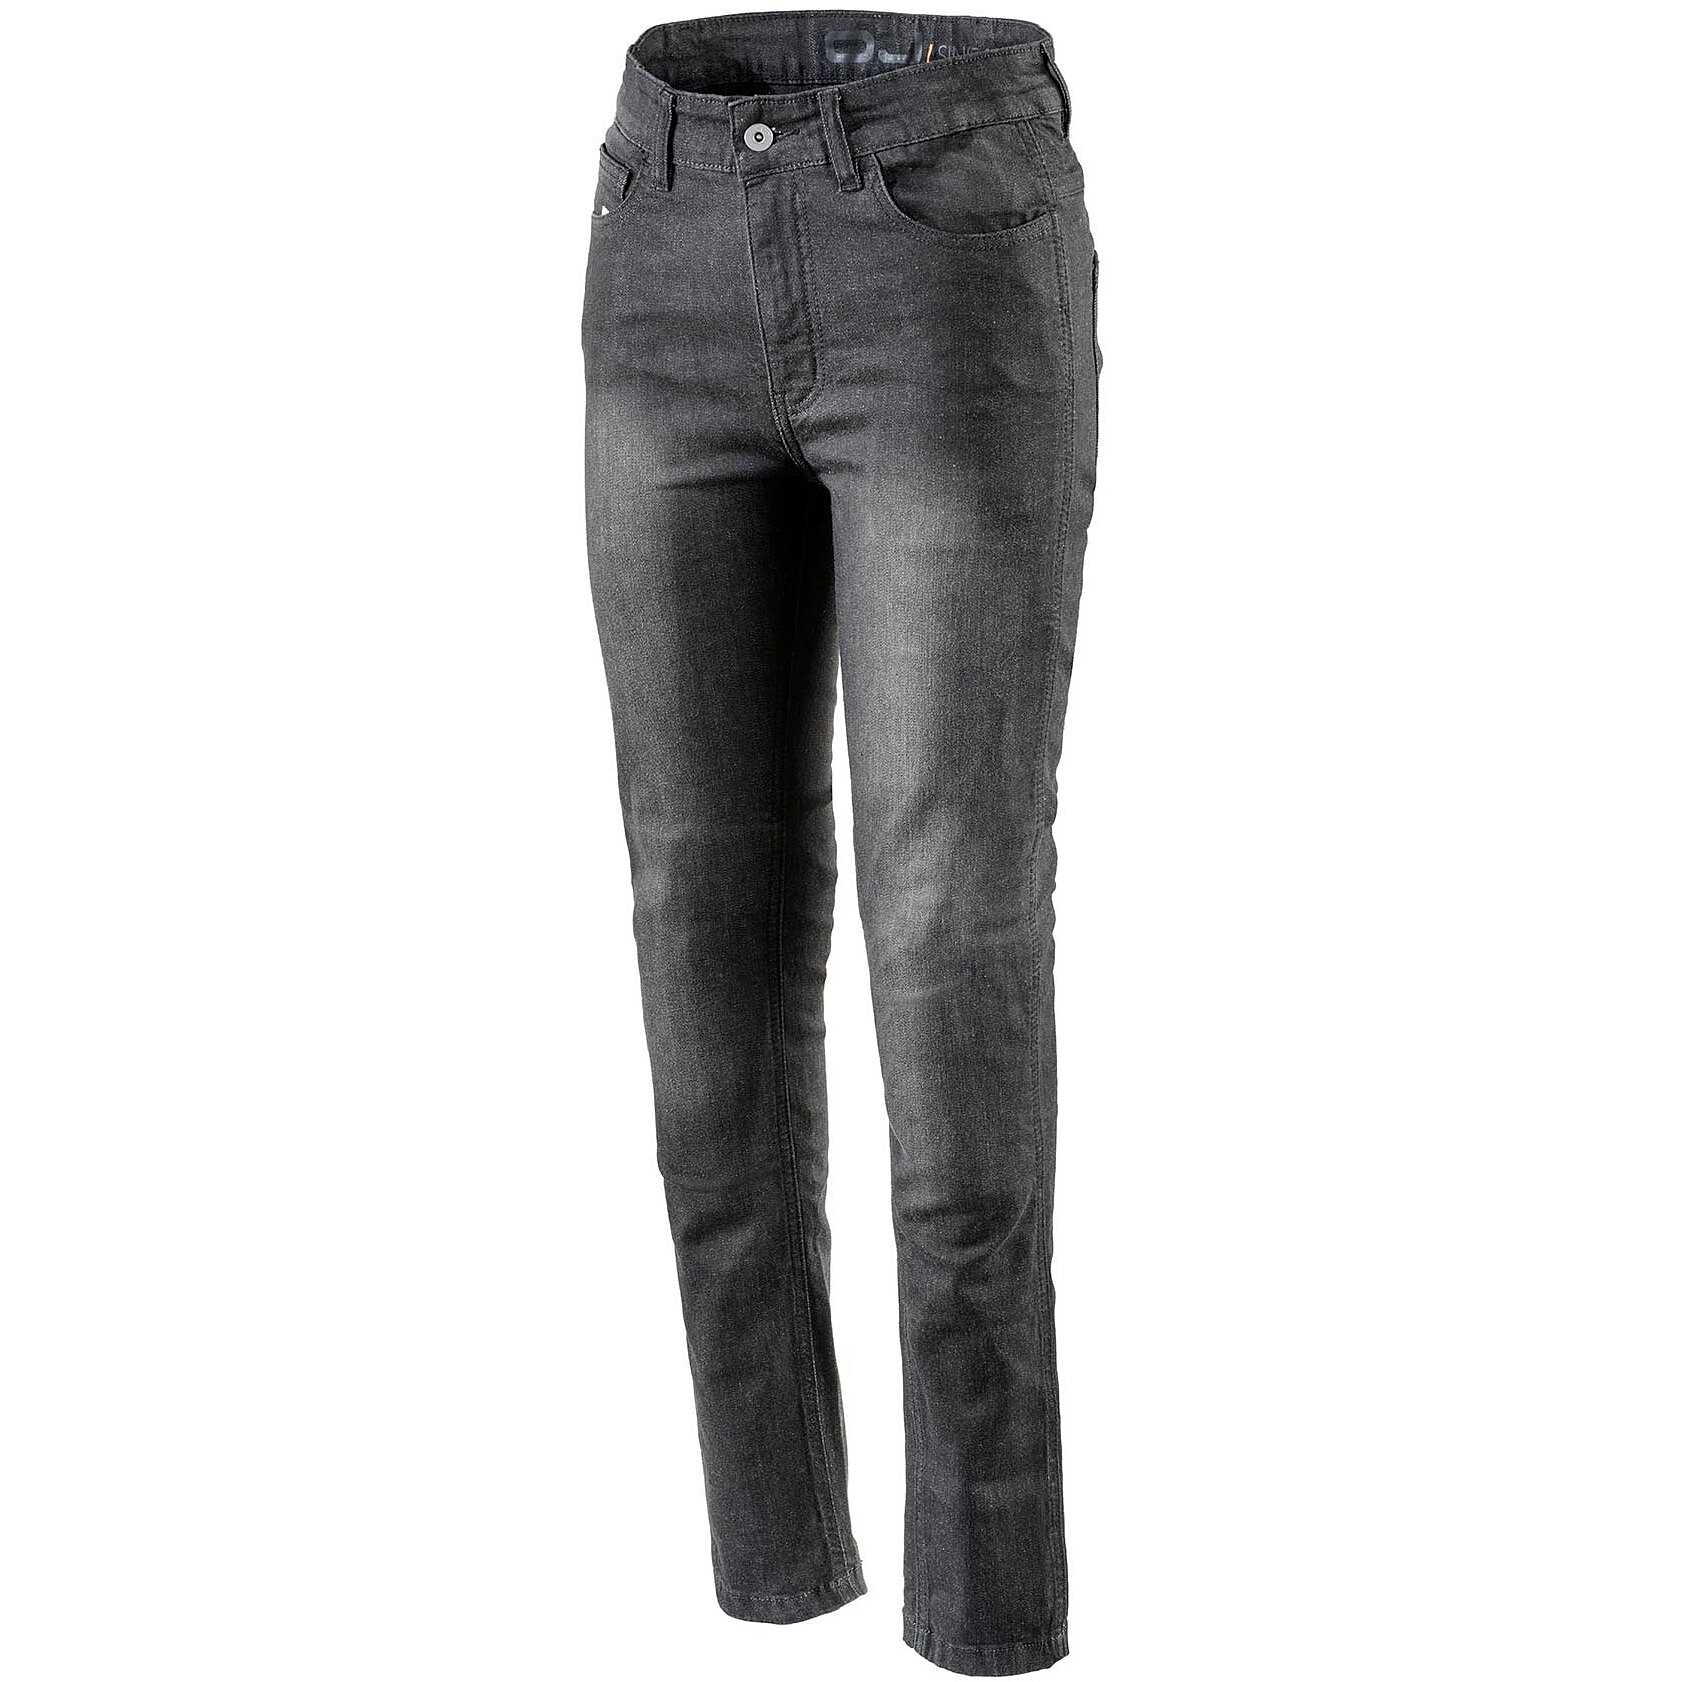 Pantalon Jeans Femme Moto Technique Oj Atmosphères J271 DARKEN